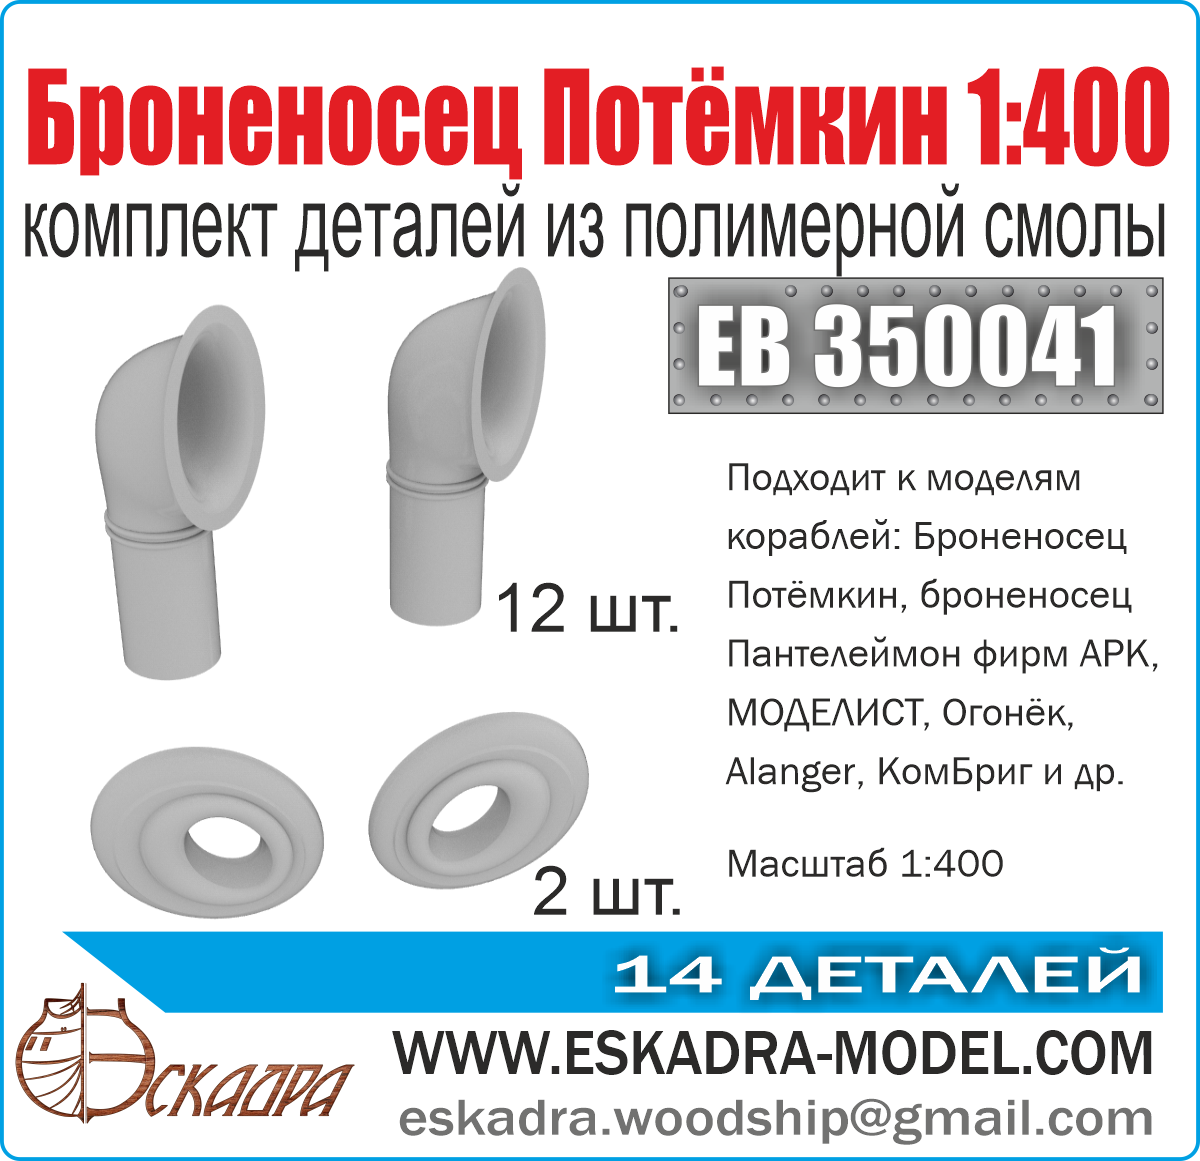 ЕВ350041  дополнения из смолы  Комплект деталей "Броненосец "Потёмкин"  (1:400)